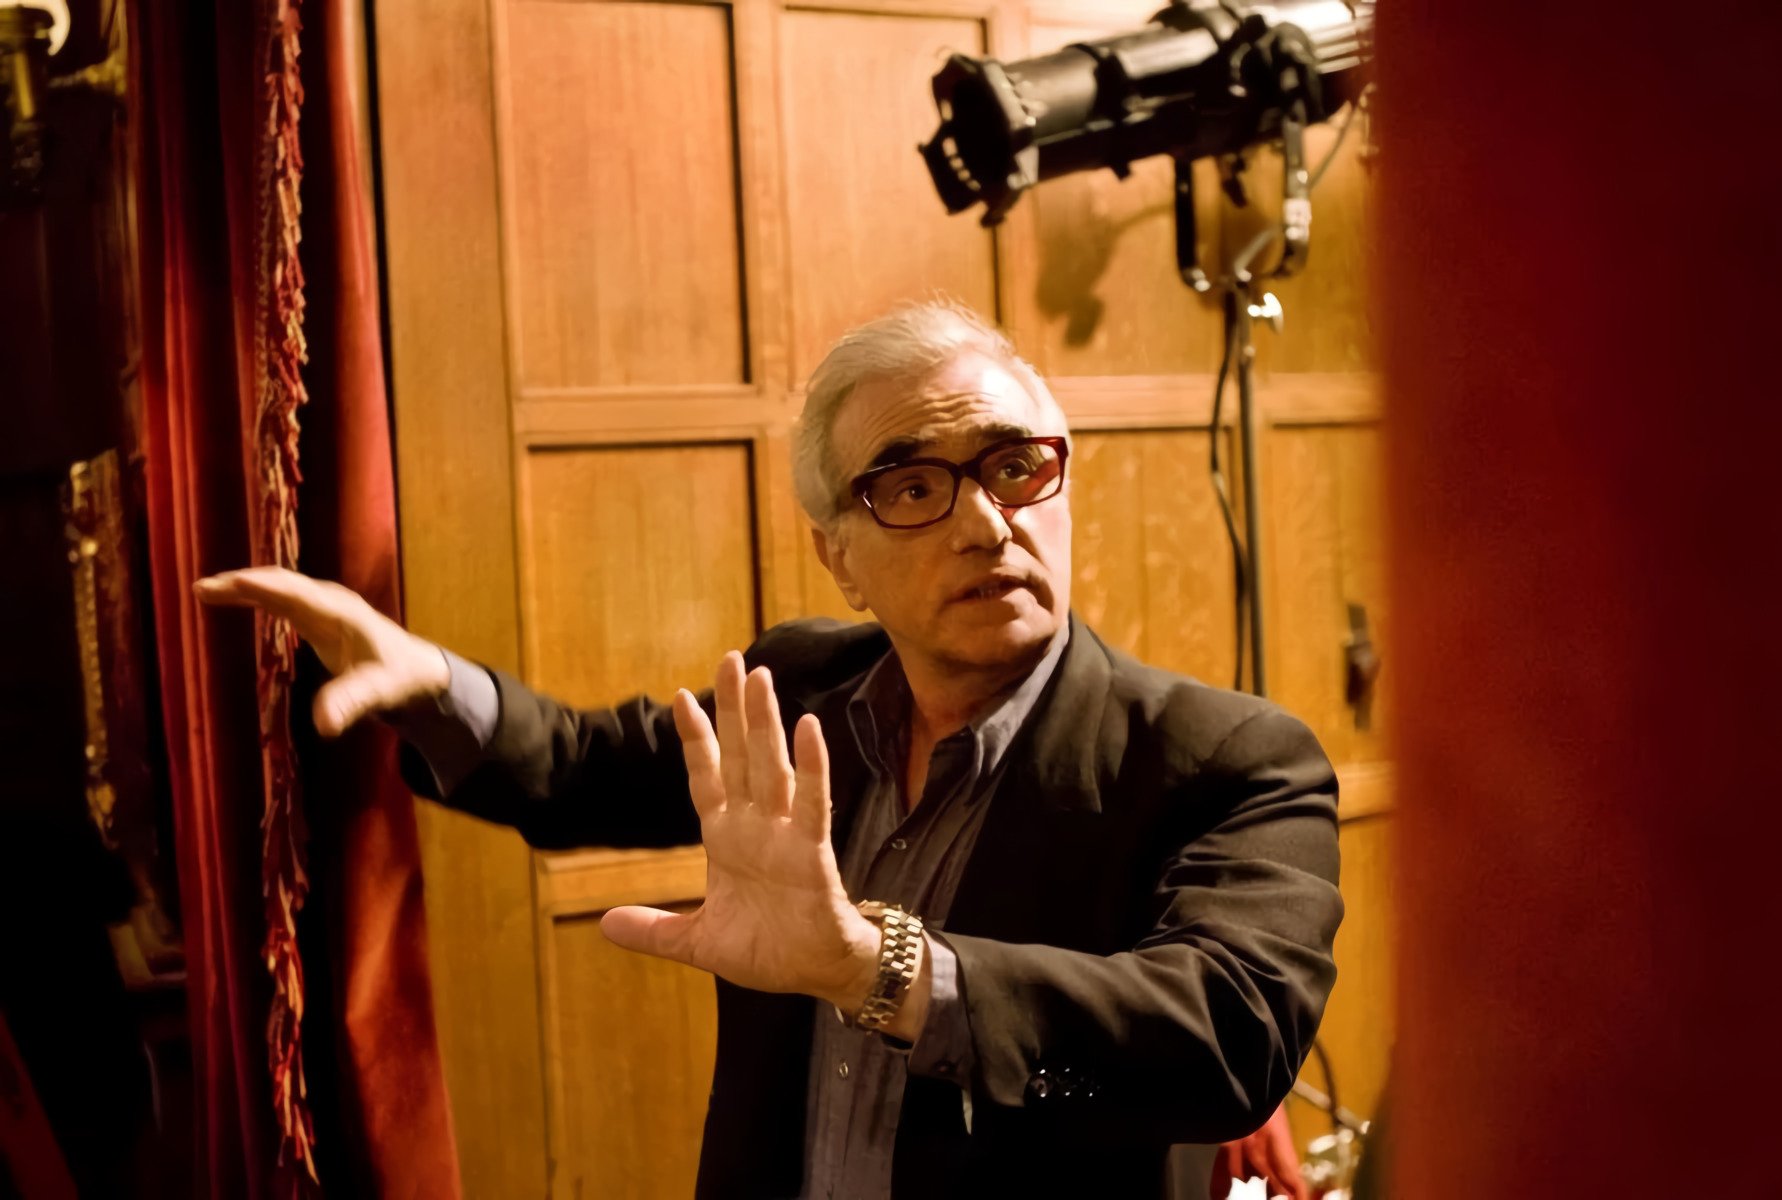 Martin Scorsese tras reunirse con el Papa: "haré una película sobre Jesús". Estos son todos los detalles